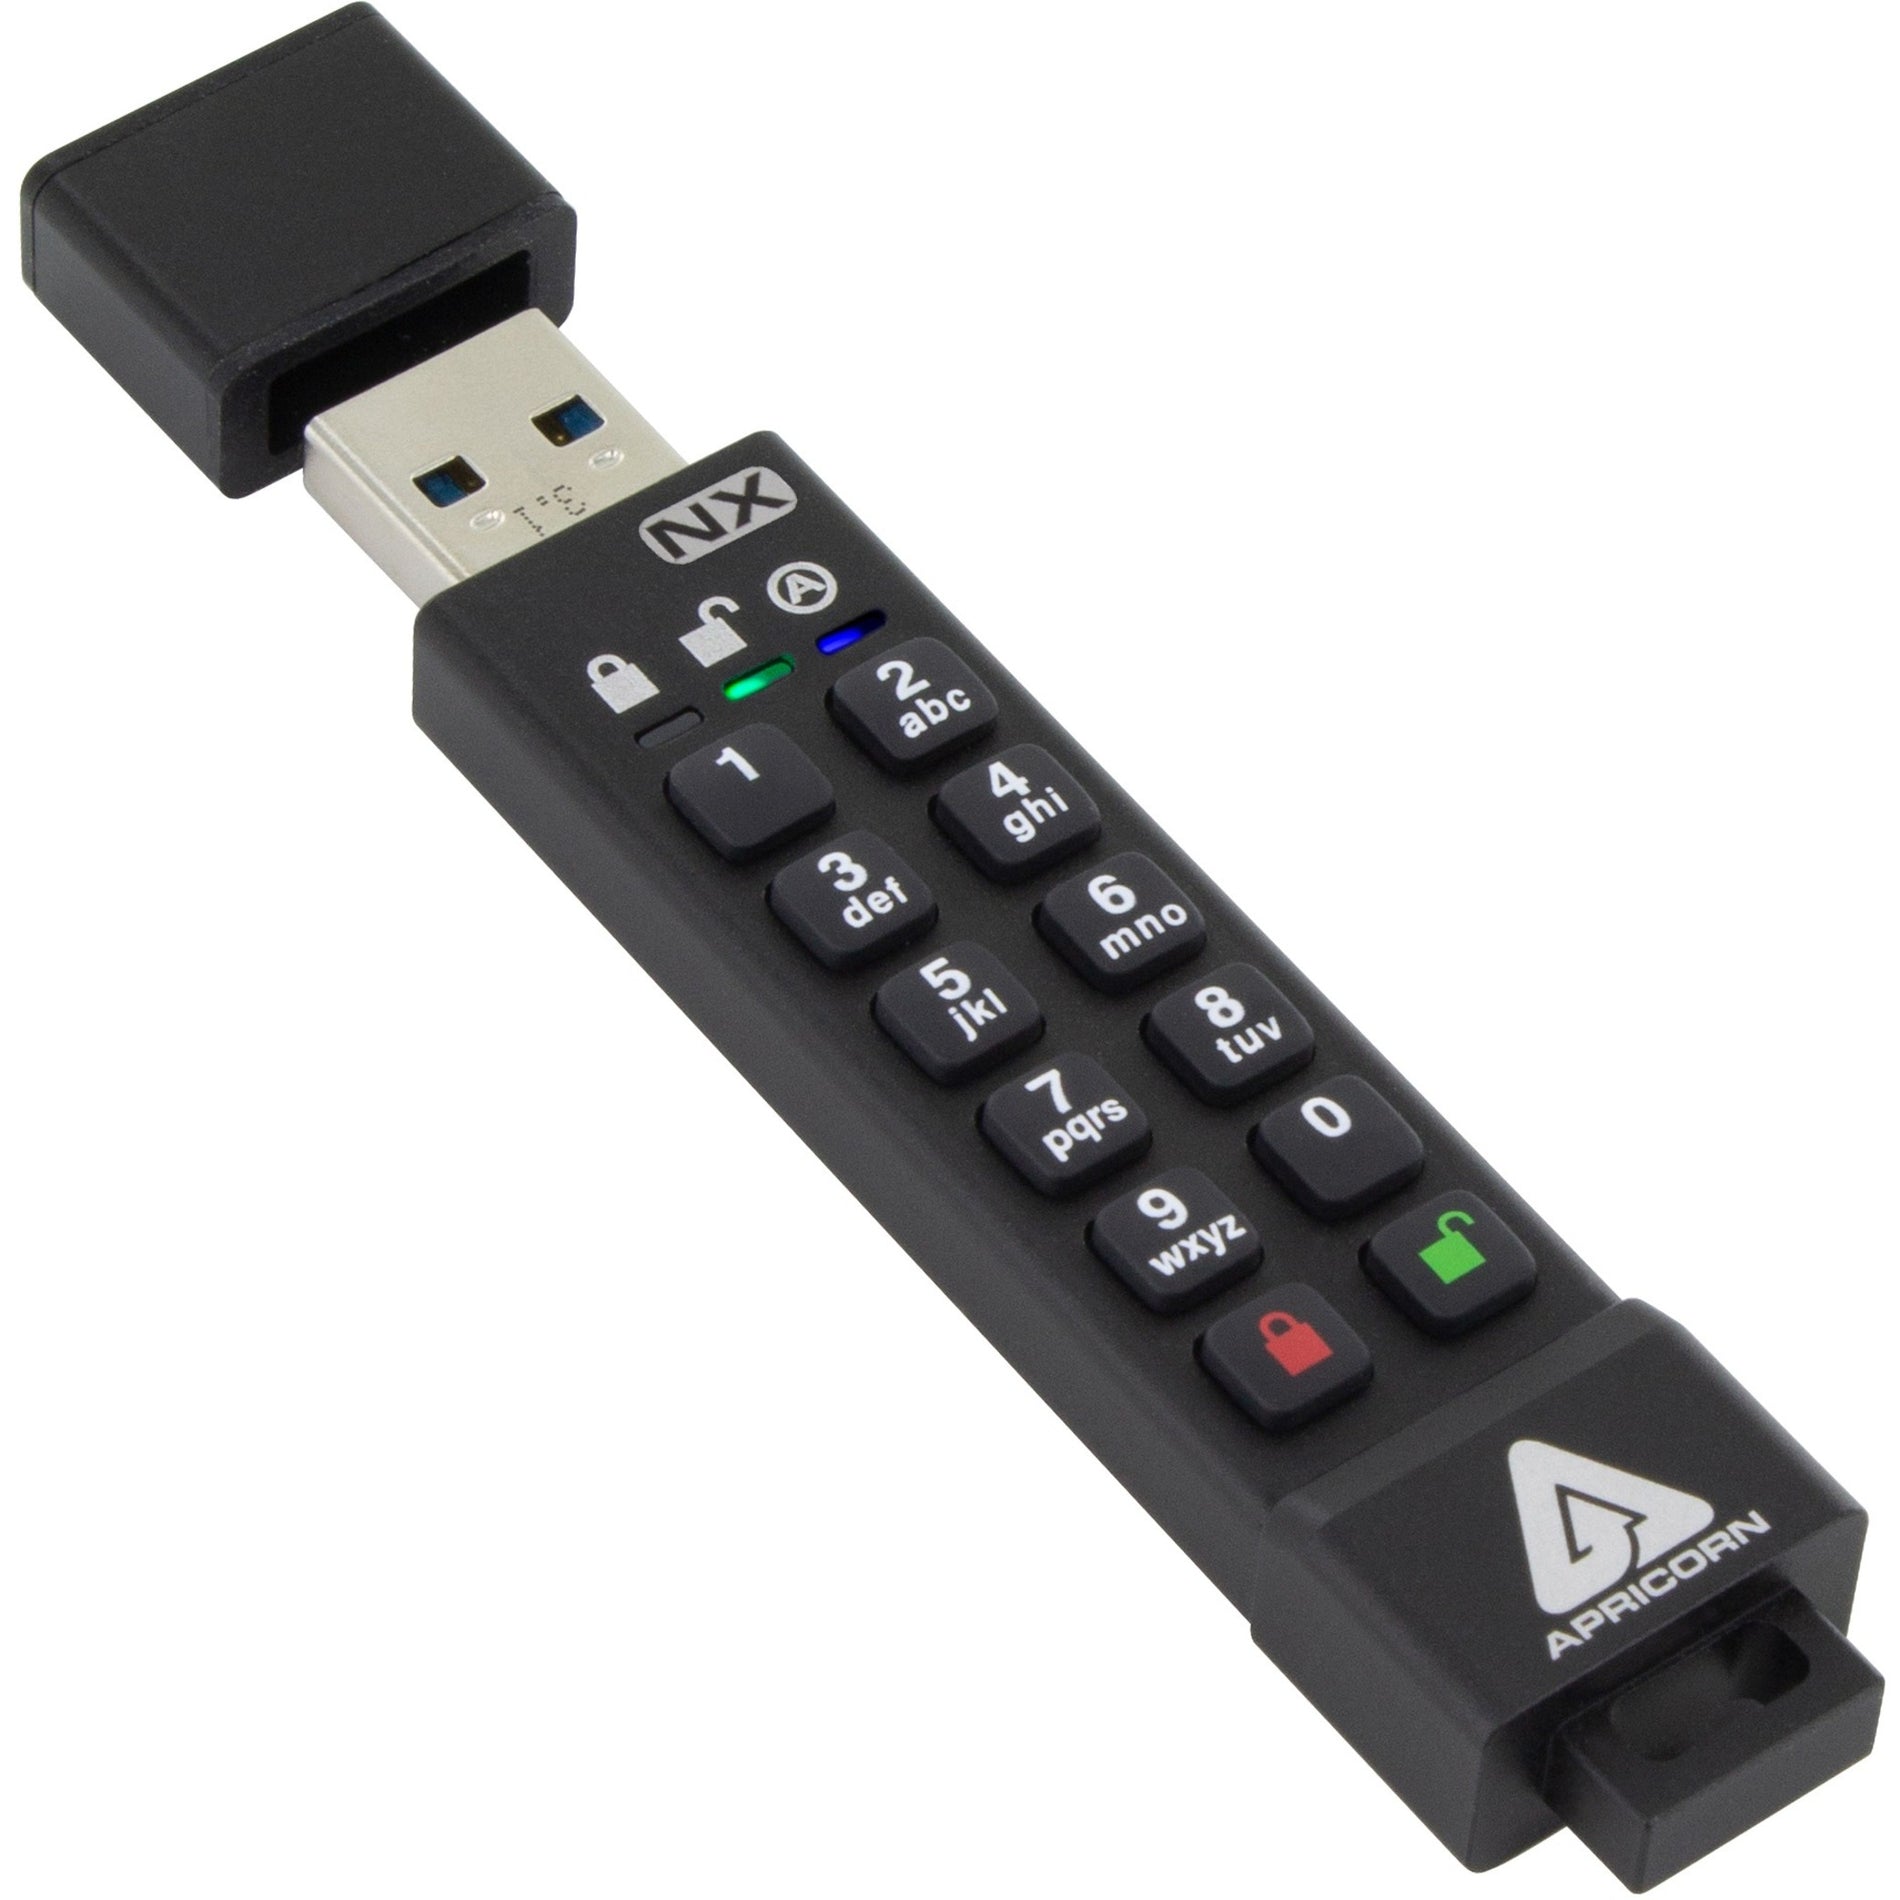 Apricorn ASK3-NX-64GB Aegis Secure Key 3NX USB 3.0 Flash Drive 64GB Storage 256-bit AES Encryption  Apricorn ASK3-NX-64GB Aegis Secure Key 3NX Clé USB 3.0 64 Go de stockage Cryptage AES 256 bits